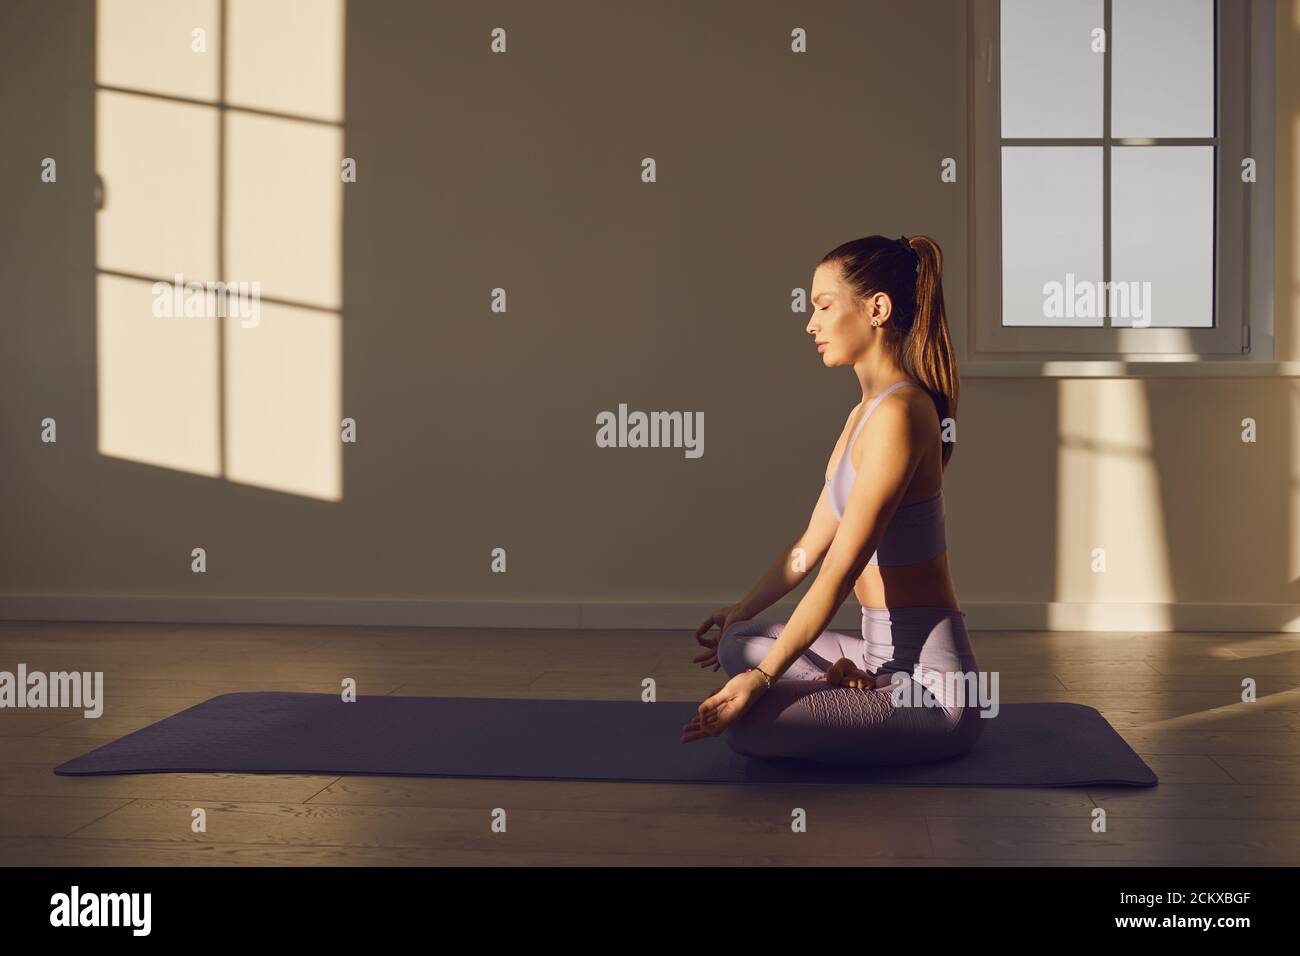 Yoga donna in classe yoga pratica yoga seduto sul pavimento in posizione lotus in una camera con finestre soleggiate. Foto Stock